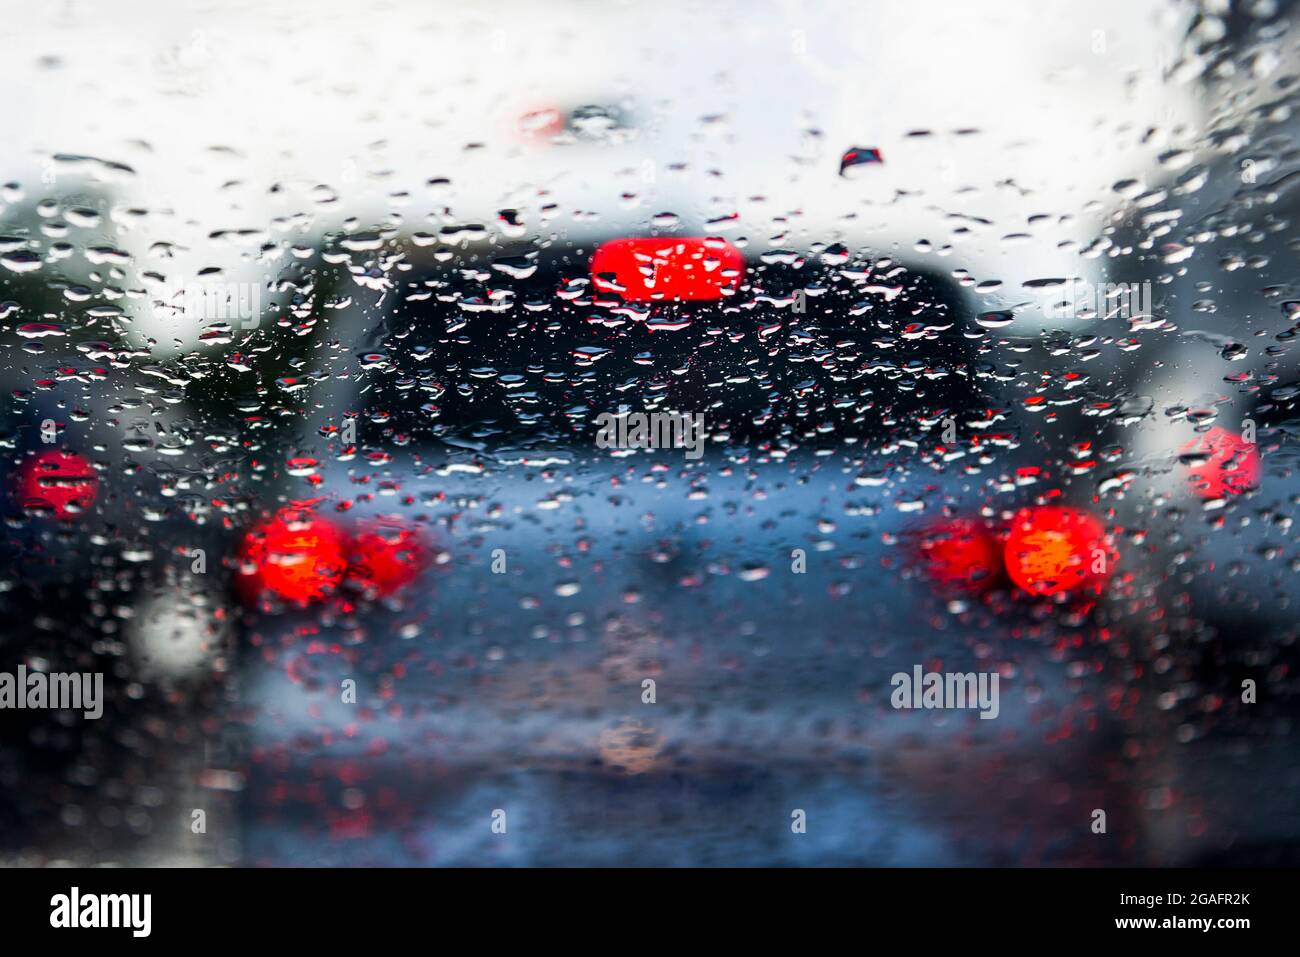 Bokeh, chuva, gotas de água pelo vidro do carro. Dia chuvoso. Lanternas de carros desfocadas. Colorido. Stock Photo